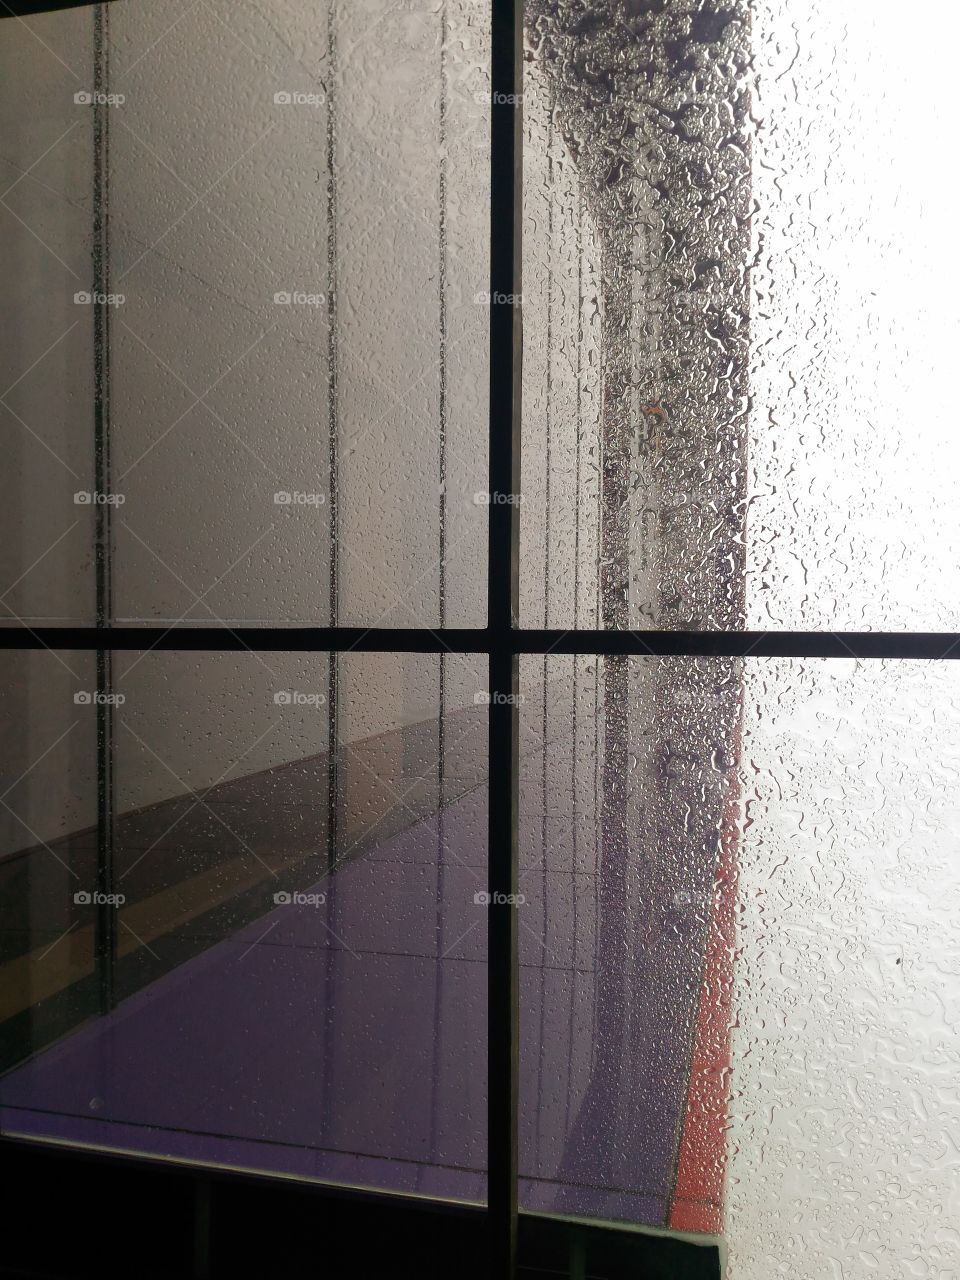 Rintik hujan di atas kaca